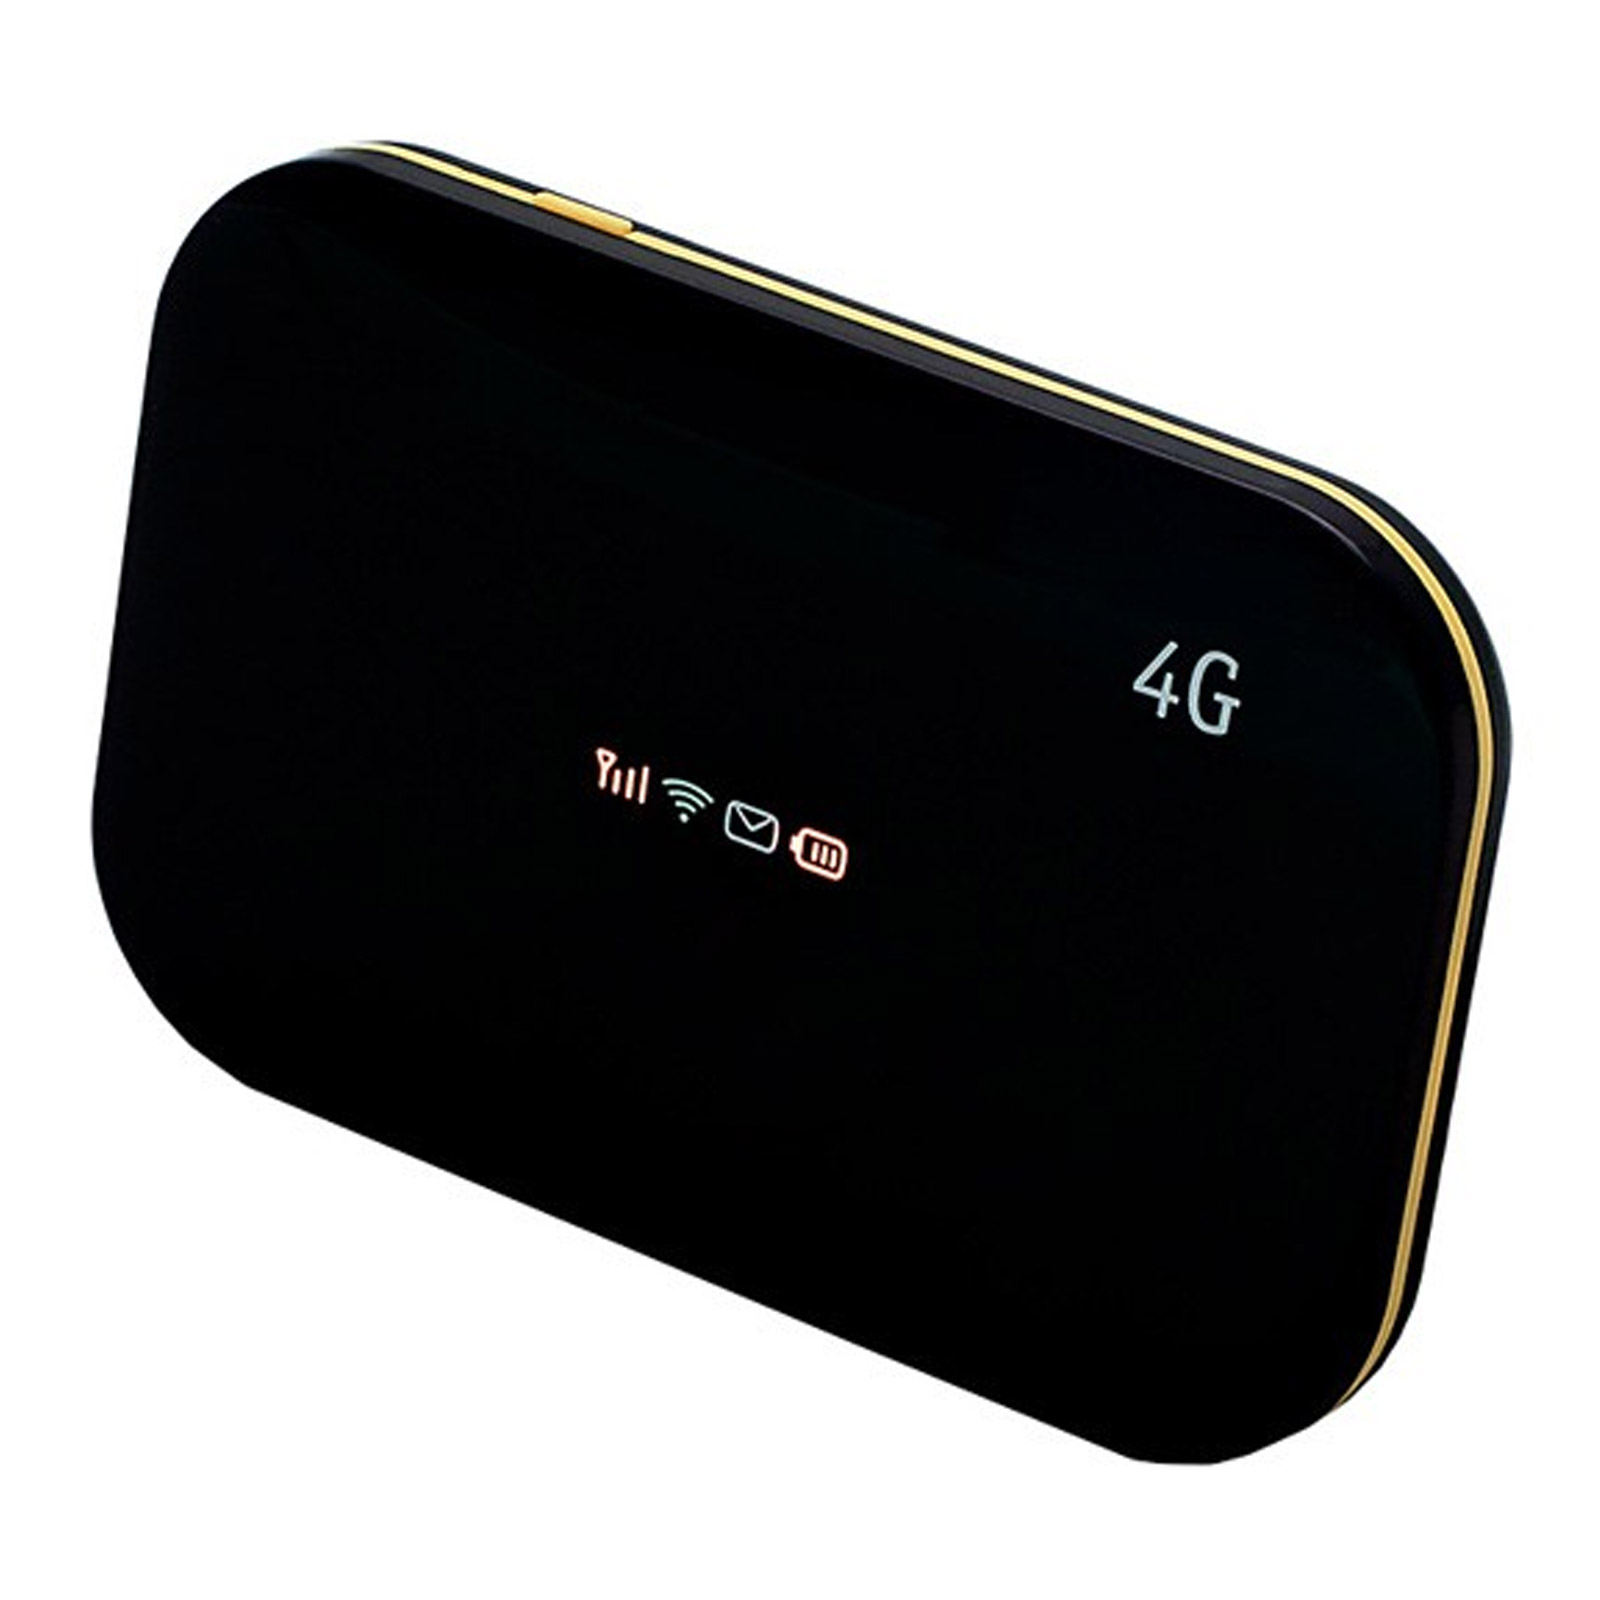 Портативный, автономный 4G, 3G модем, WiFi роутер, маршрутизатор Shanghai Boost Even L02H, L02Hi, цвет черный